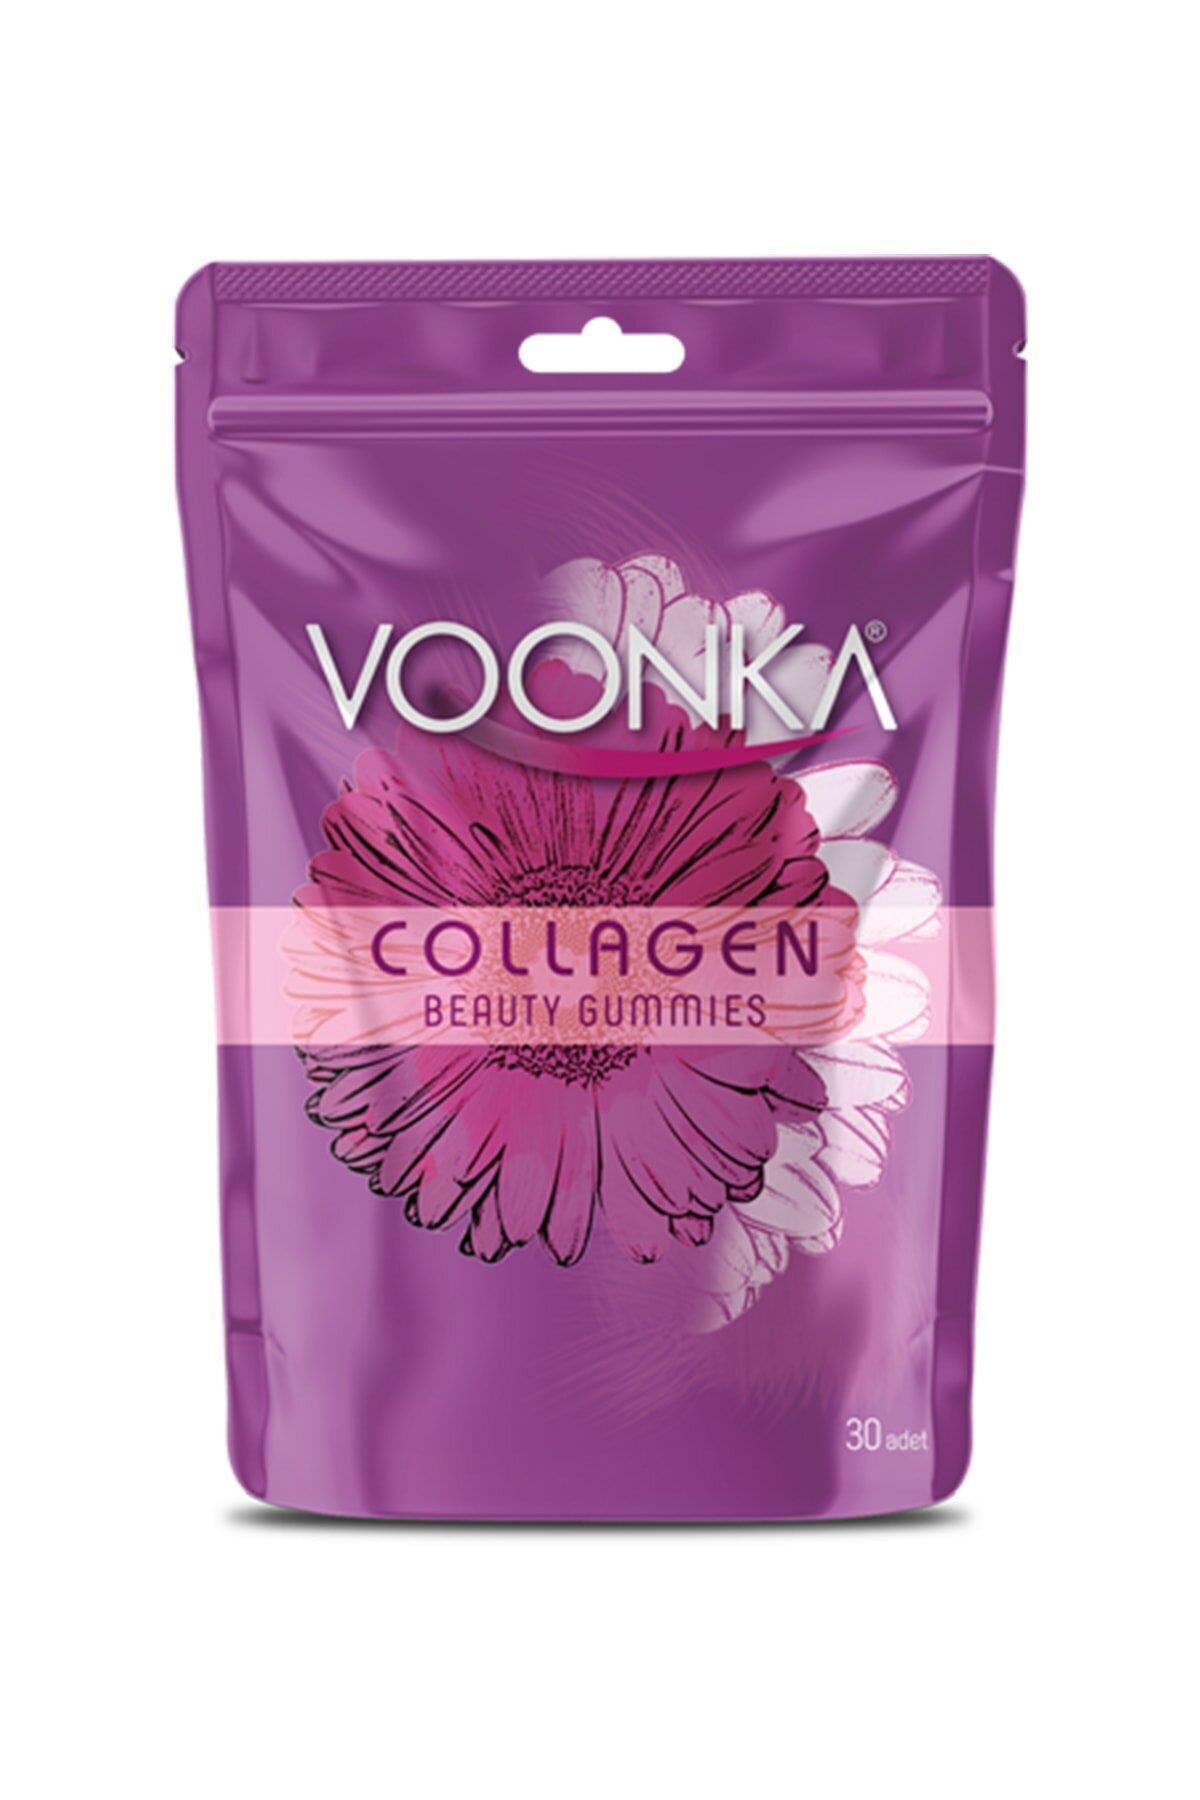 vonka Voonka Collagen Beauty Prebiyotik Gummies 30 Adet